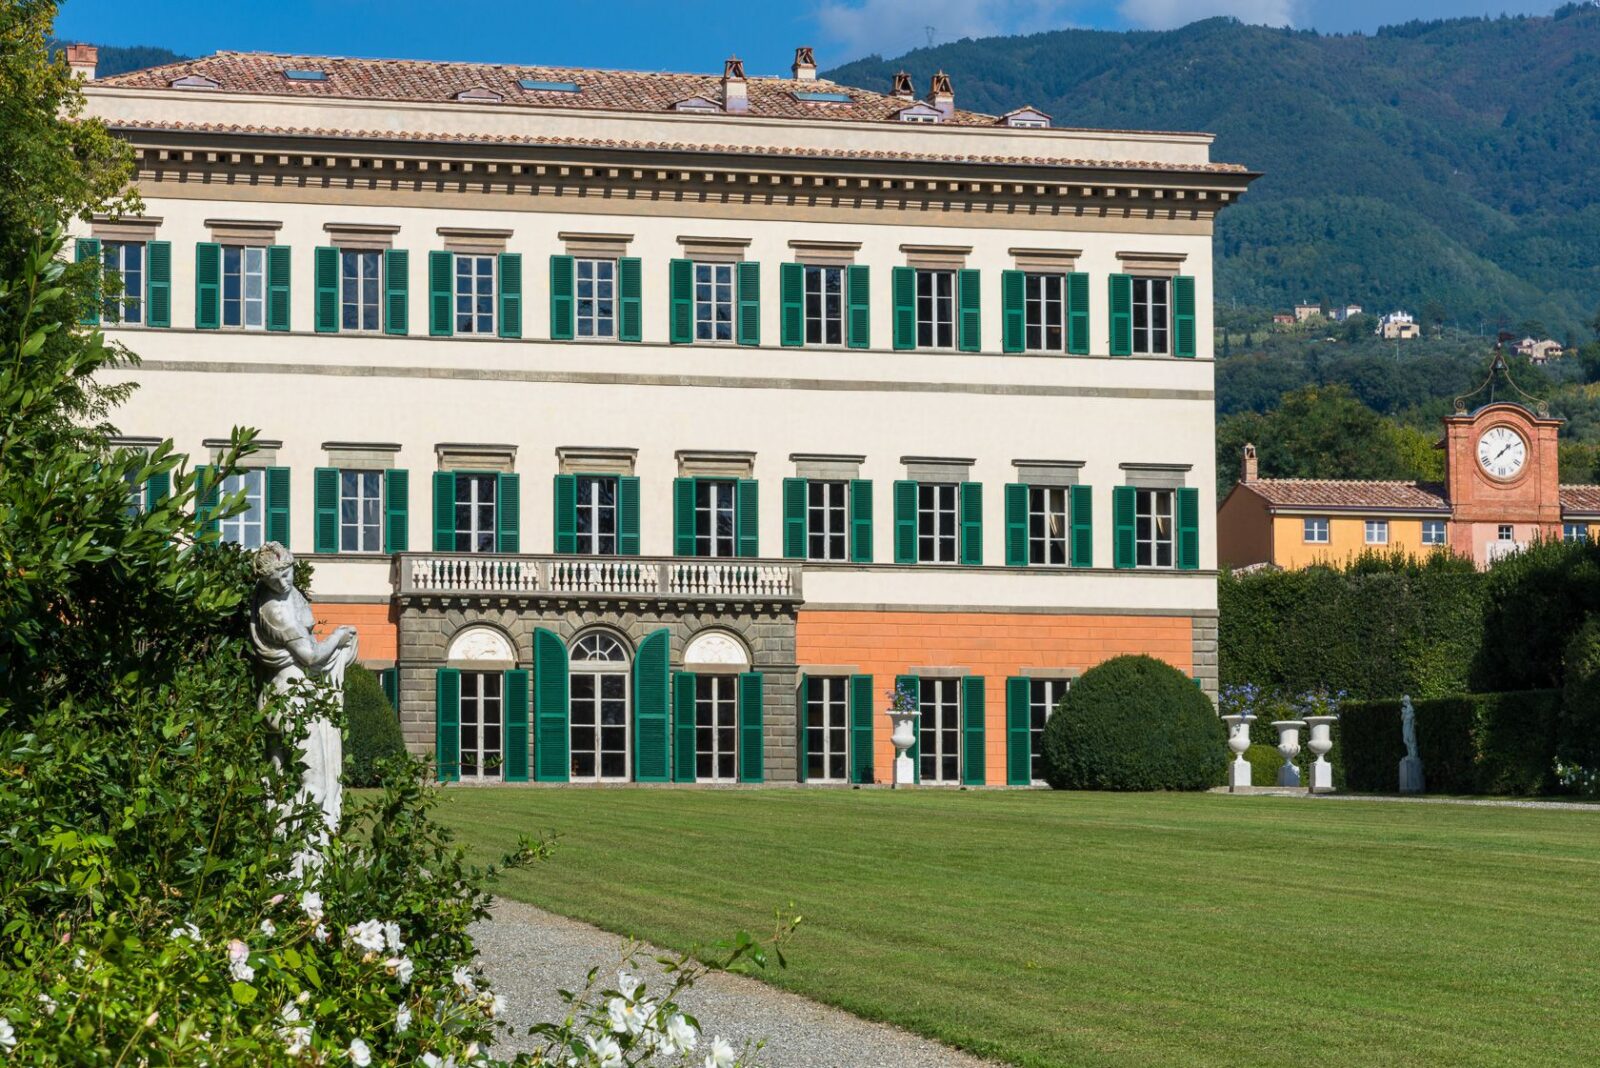 Villa Reale Marlia